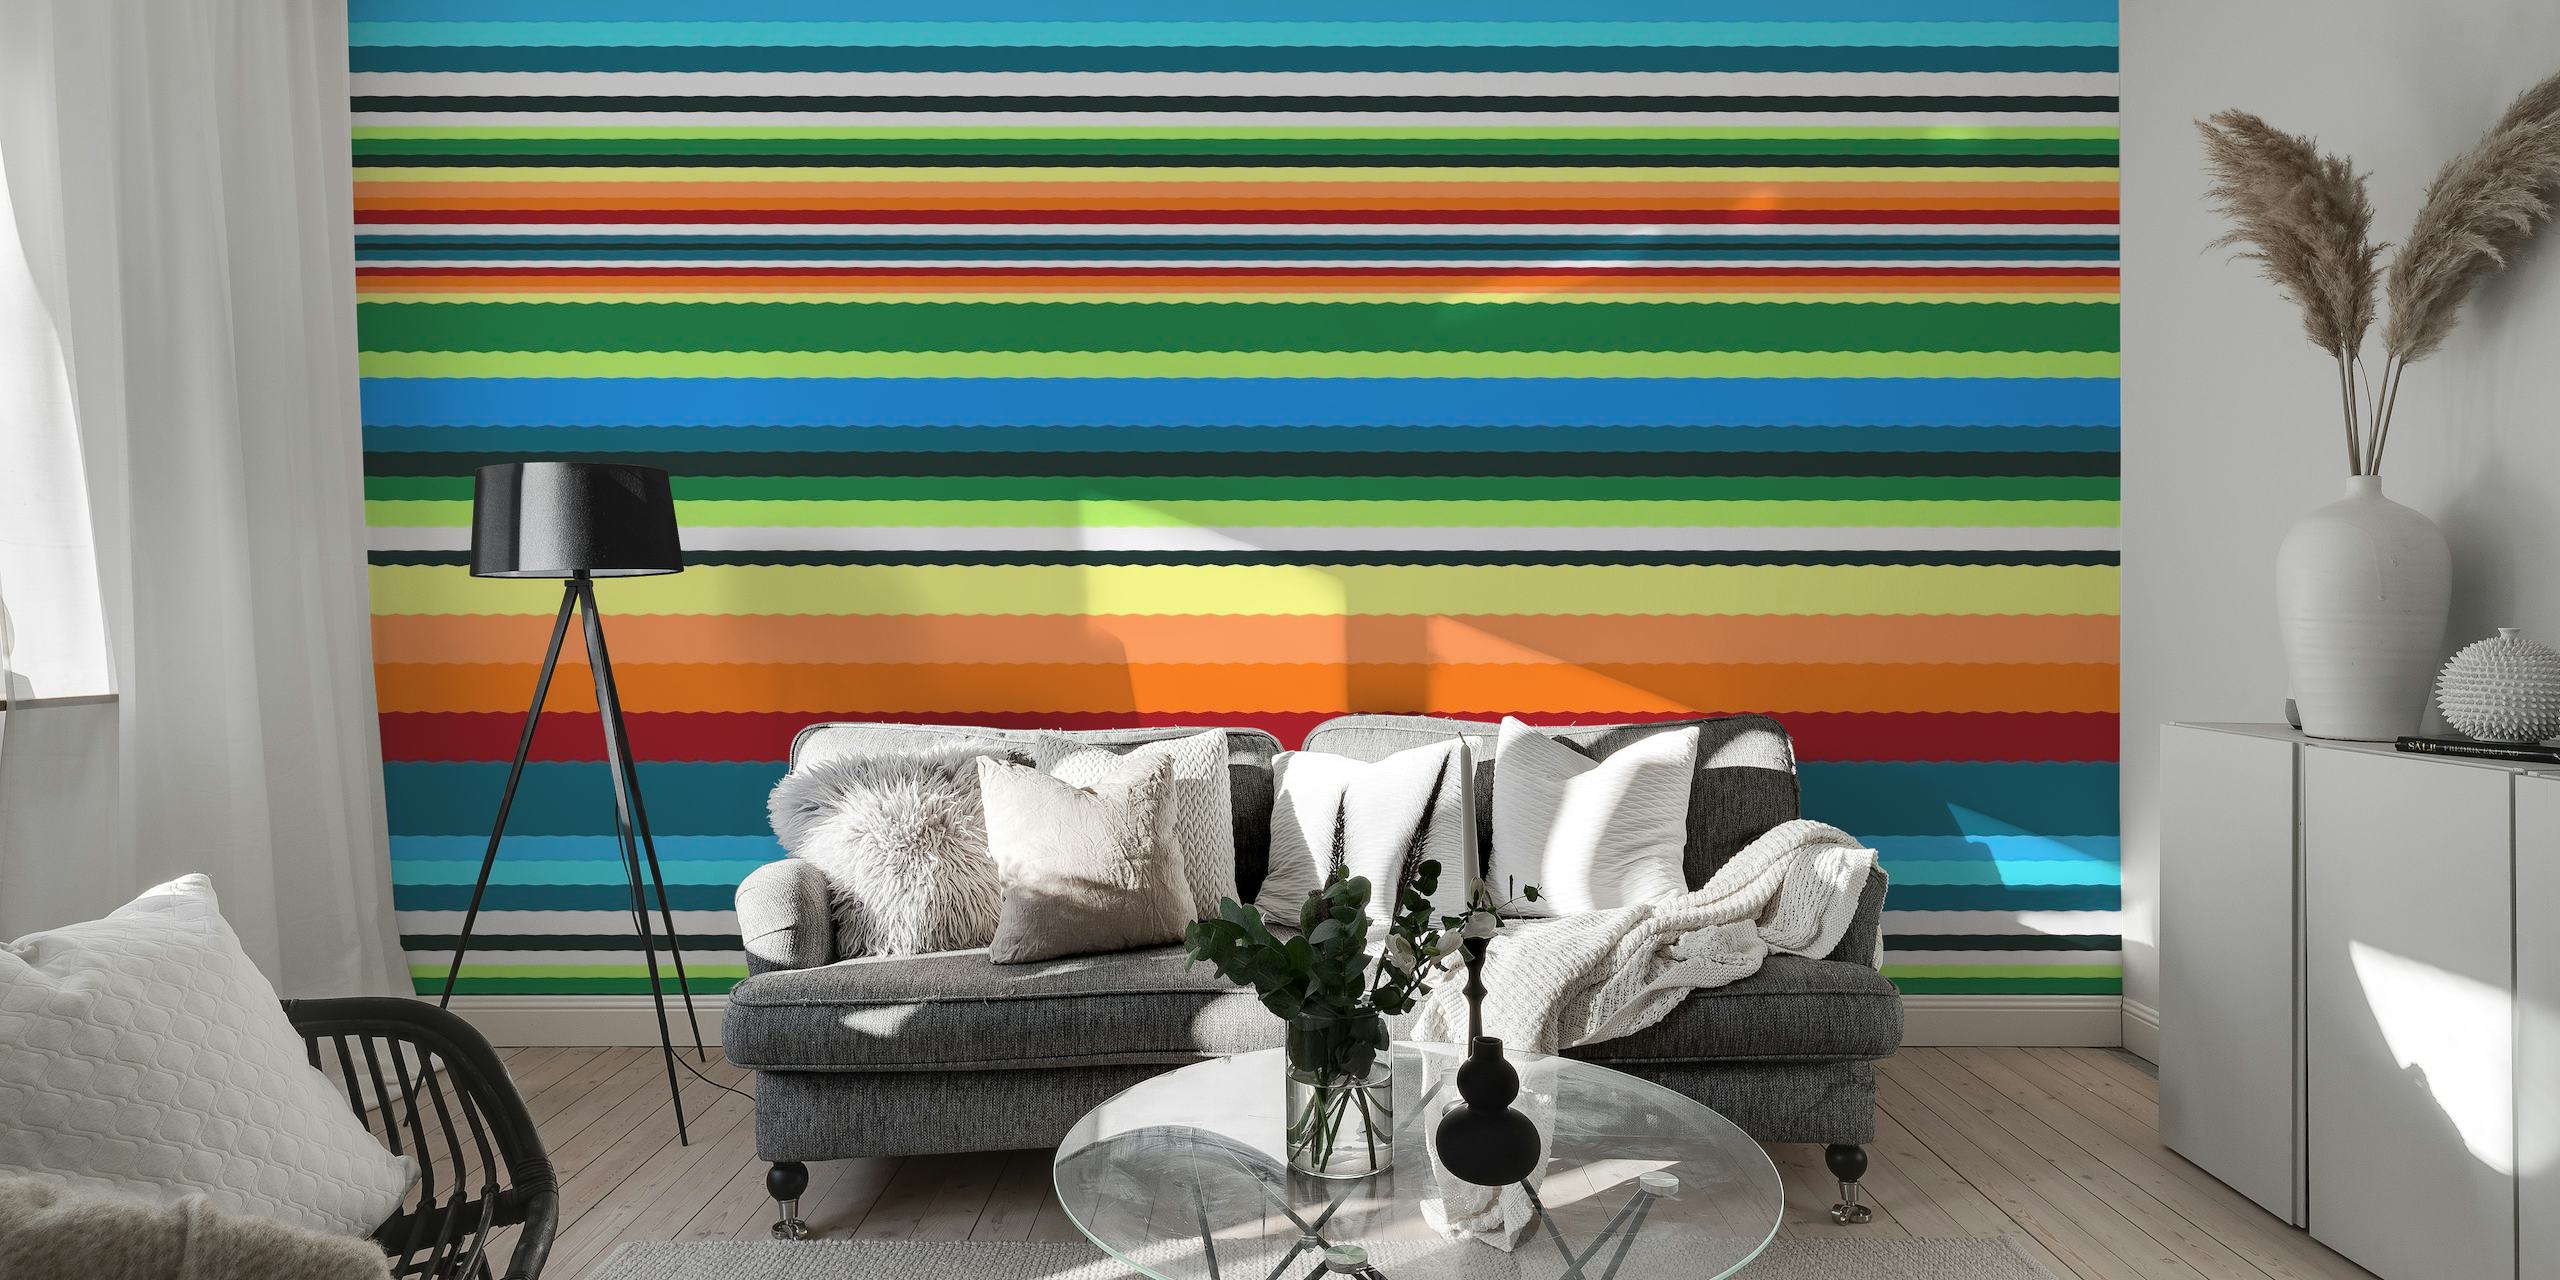 Farverigt stribet vægmaleri med titlen 'Bohemian Bright' med livlige linjer i forskellige farver.